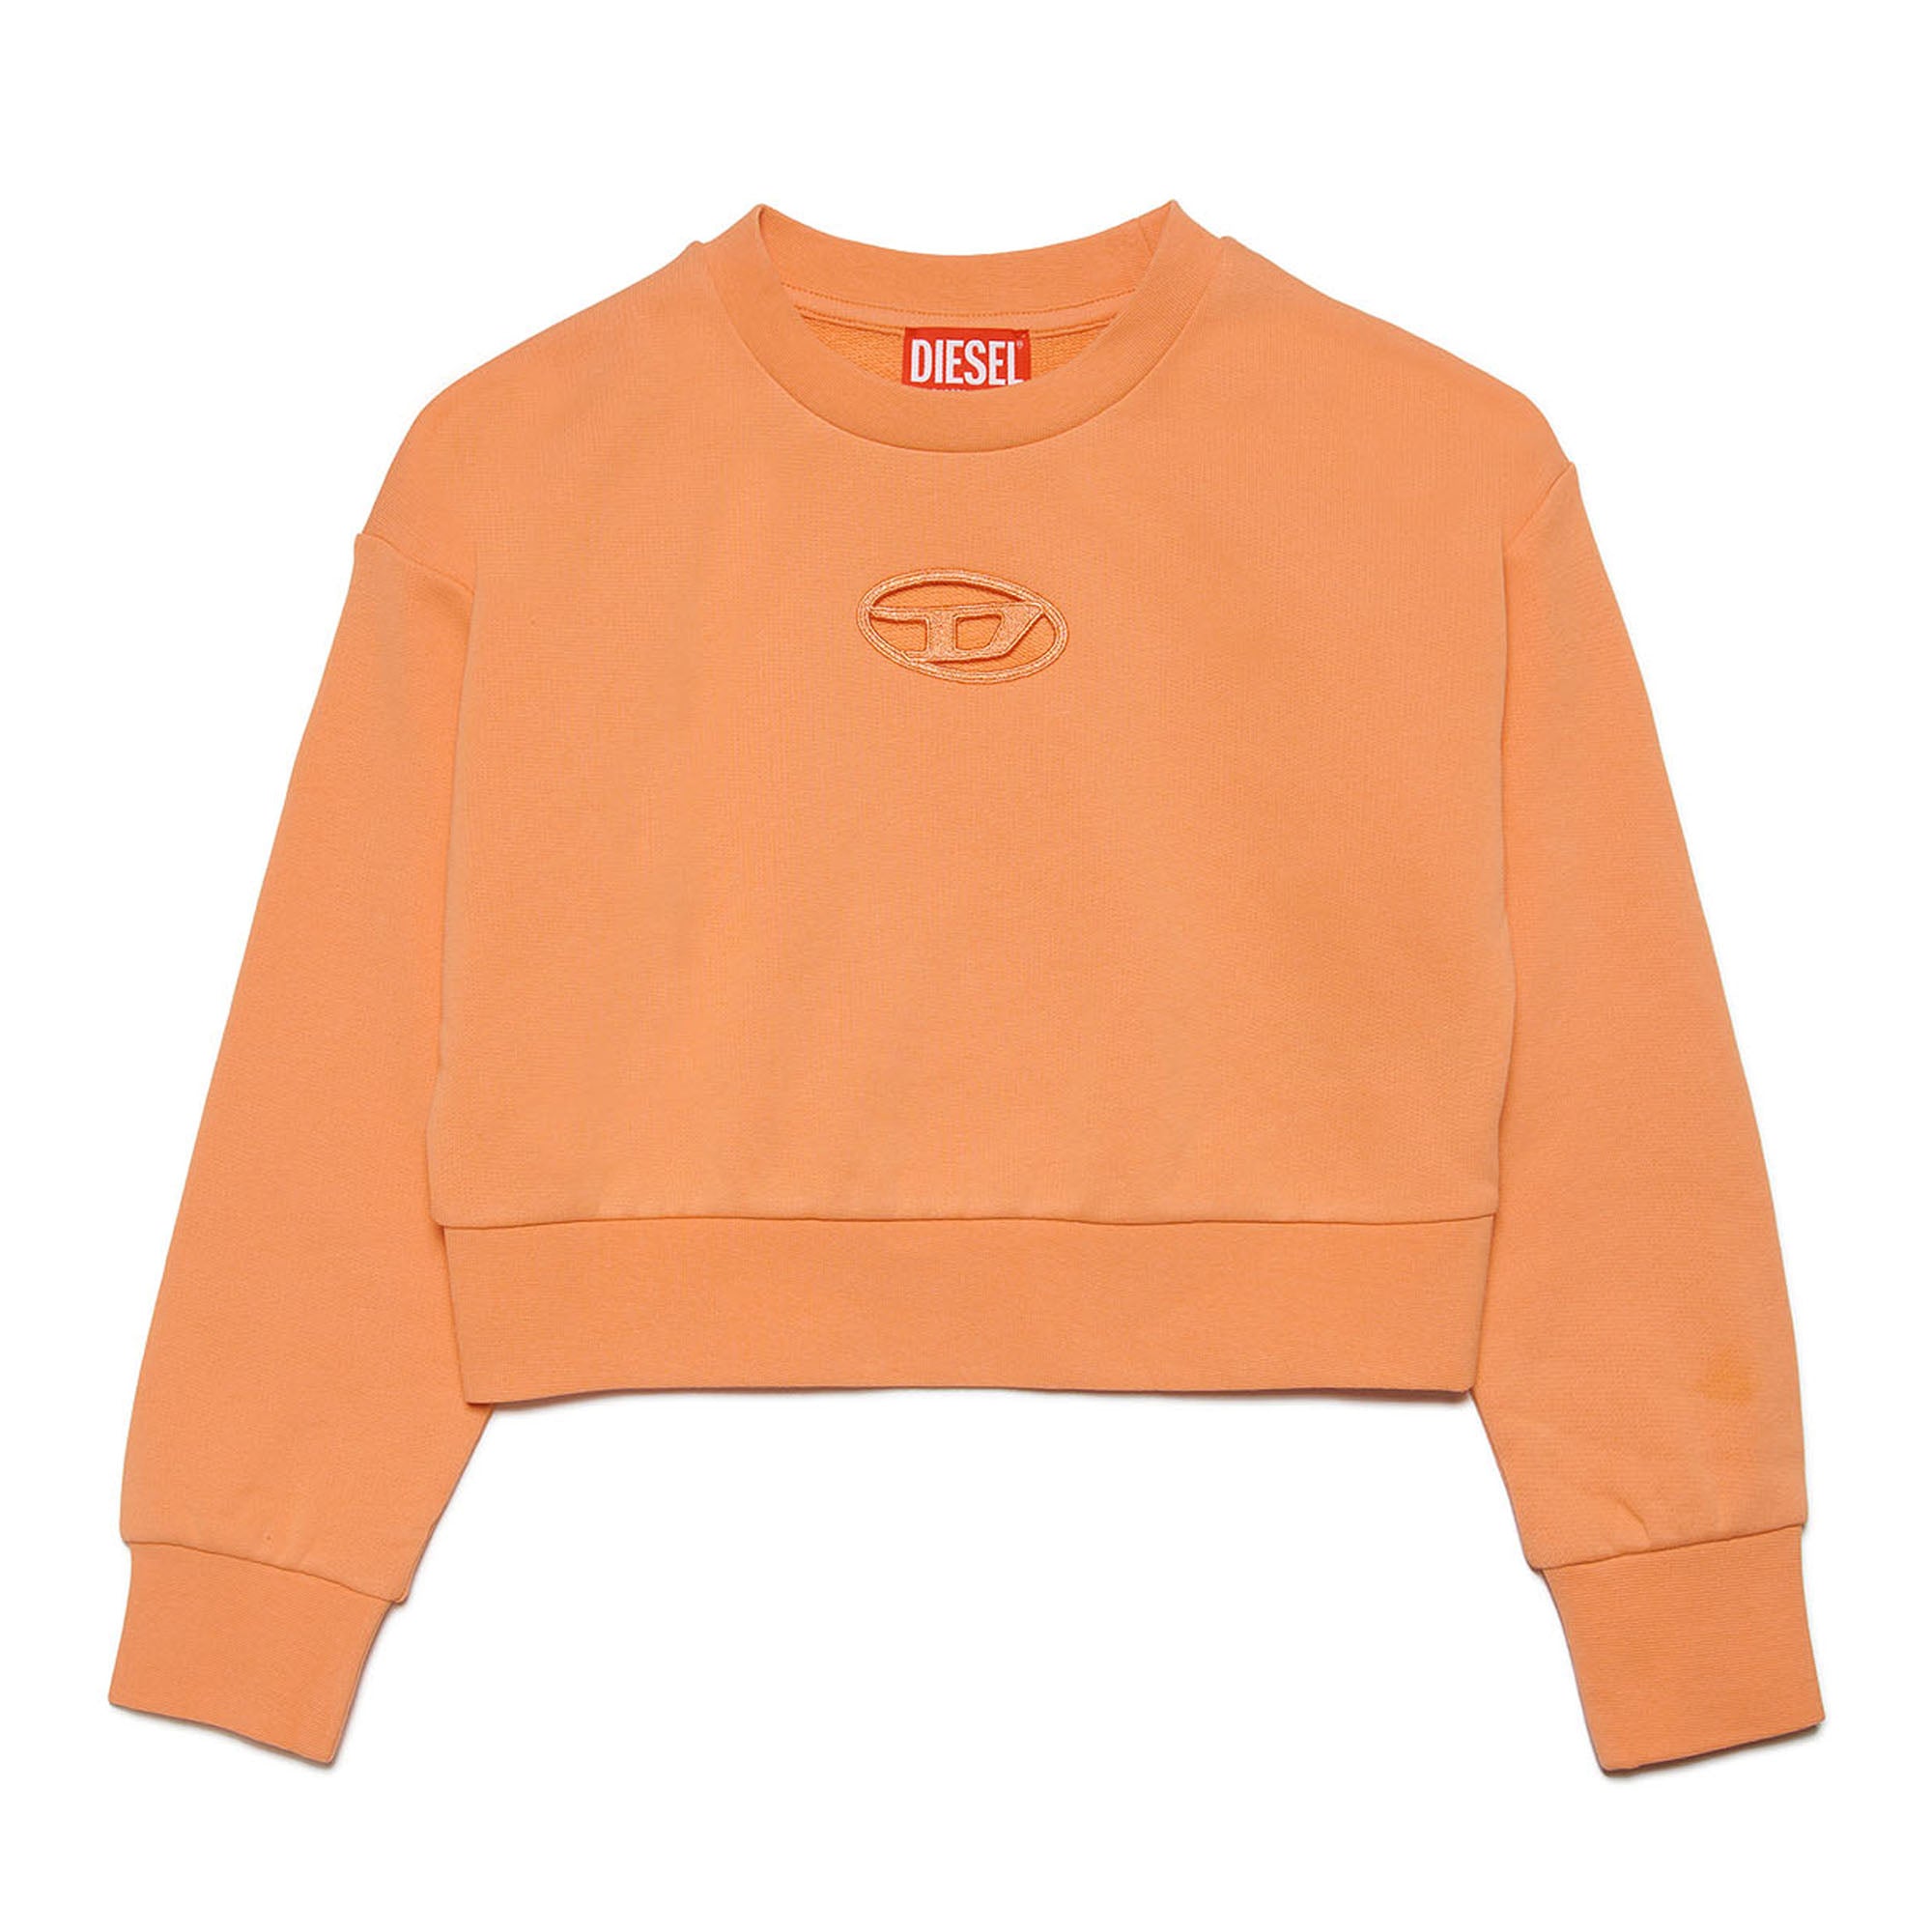 Diesel Straslium Orange Sweatshirt